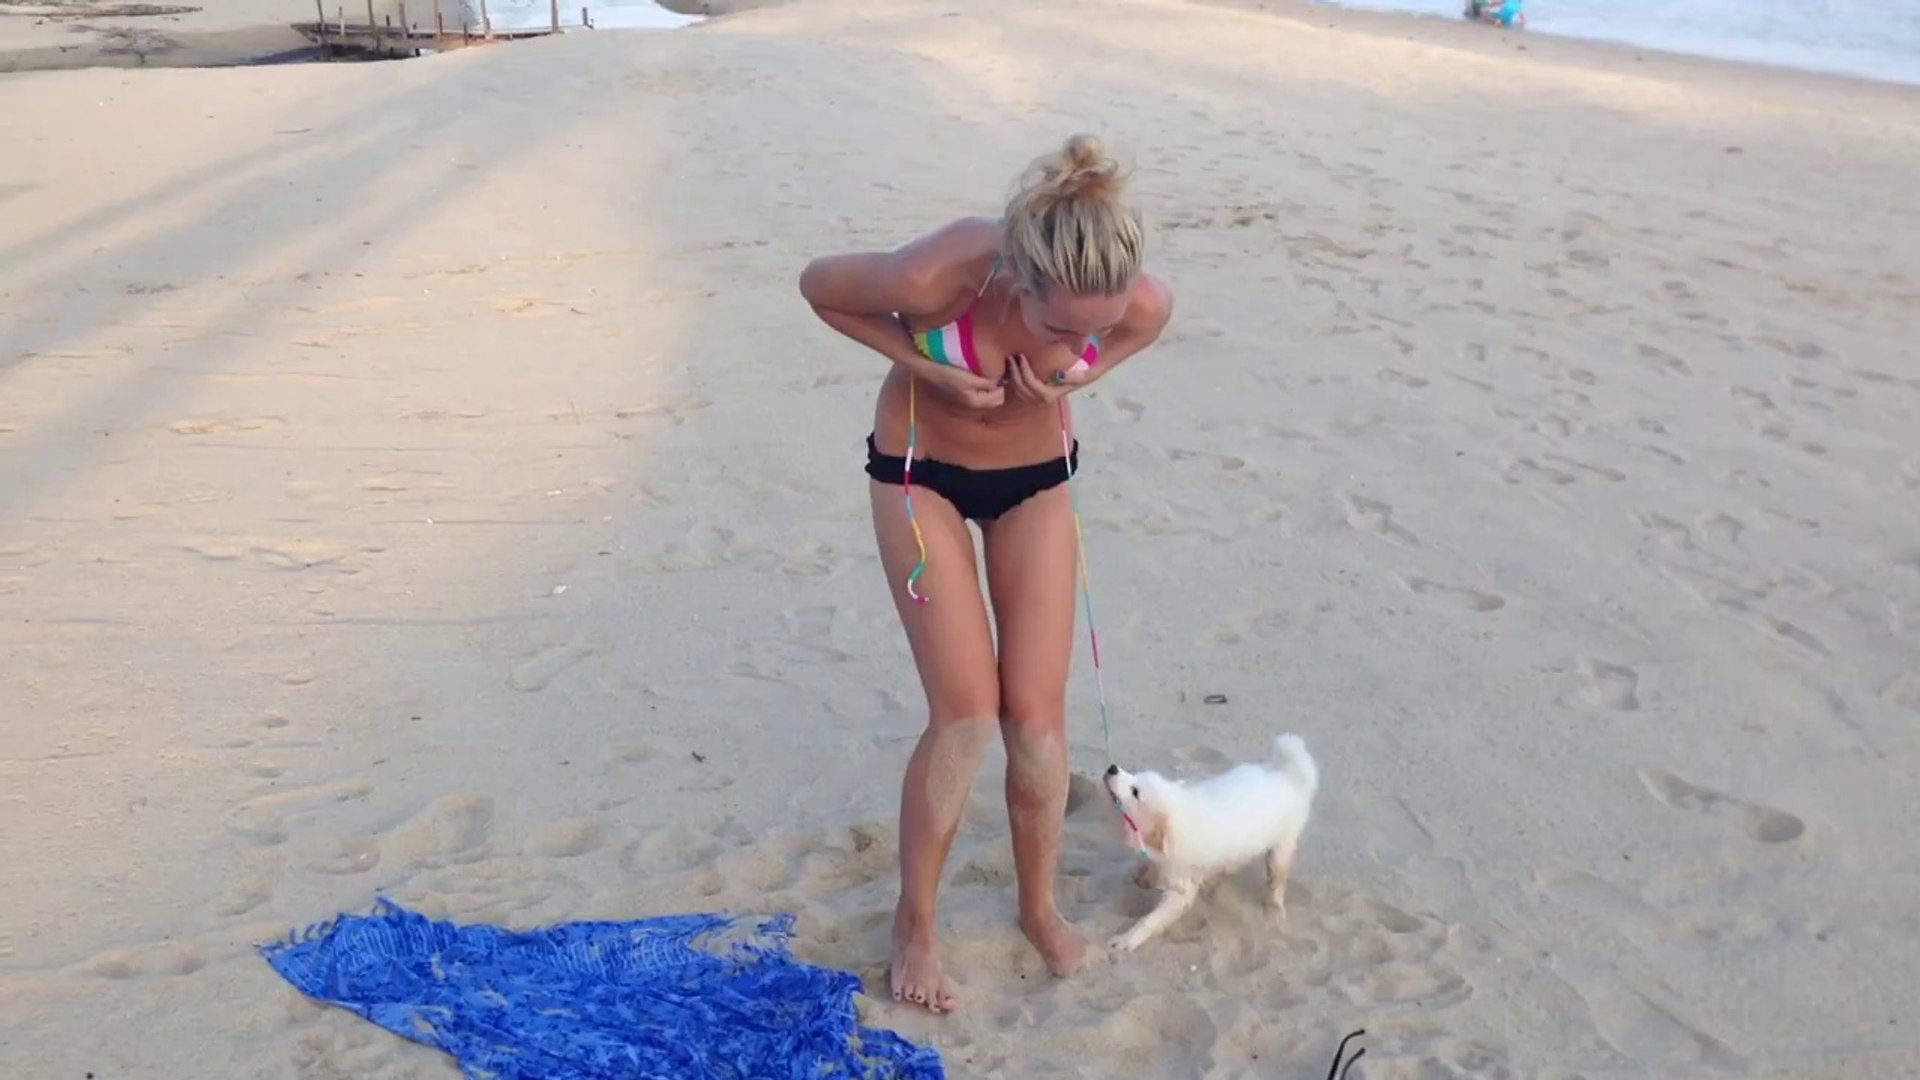 Юмор видео без регистрации. Приколы на пляже. Собака стянула купальник. На пляже девушки пьяные. Девушки по собачьи на пляже.